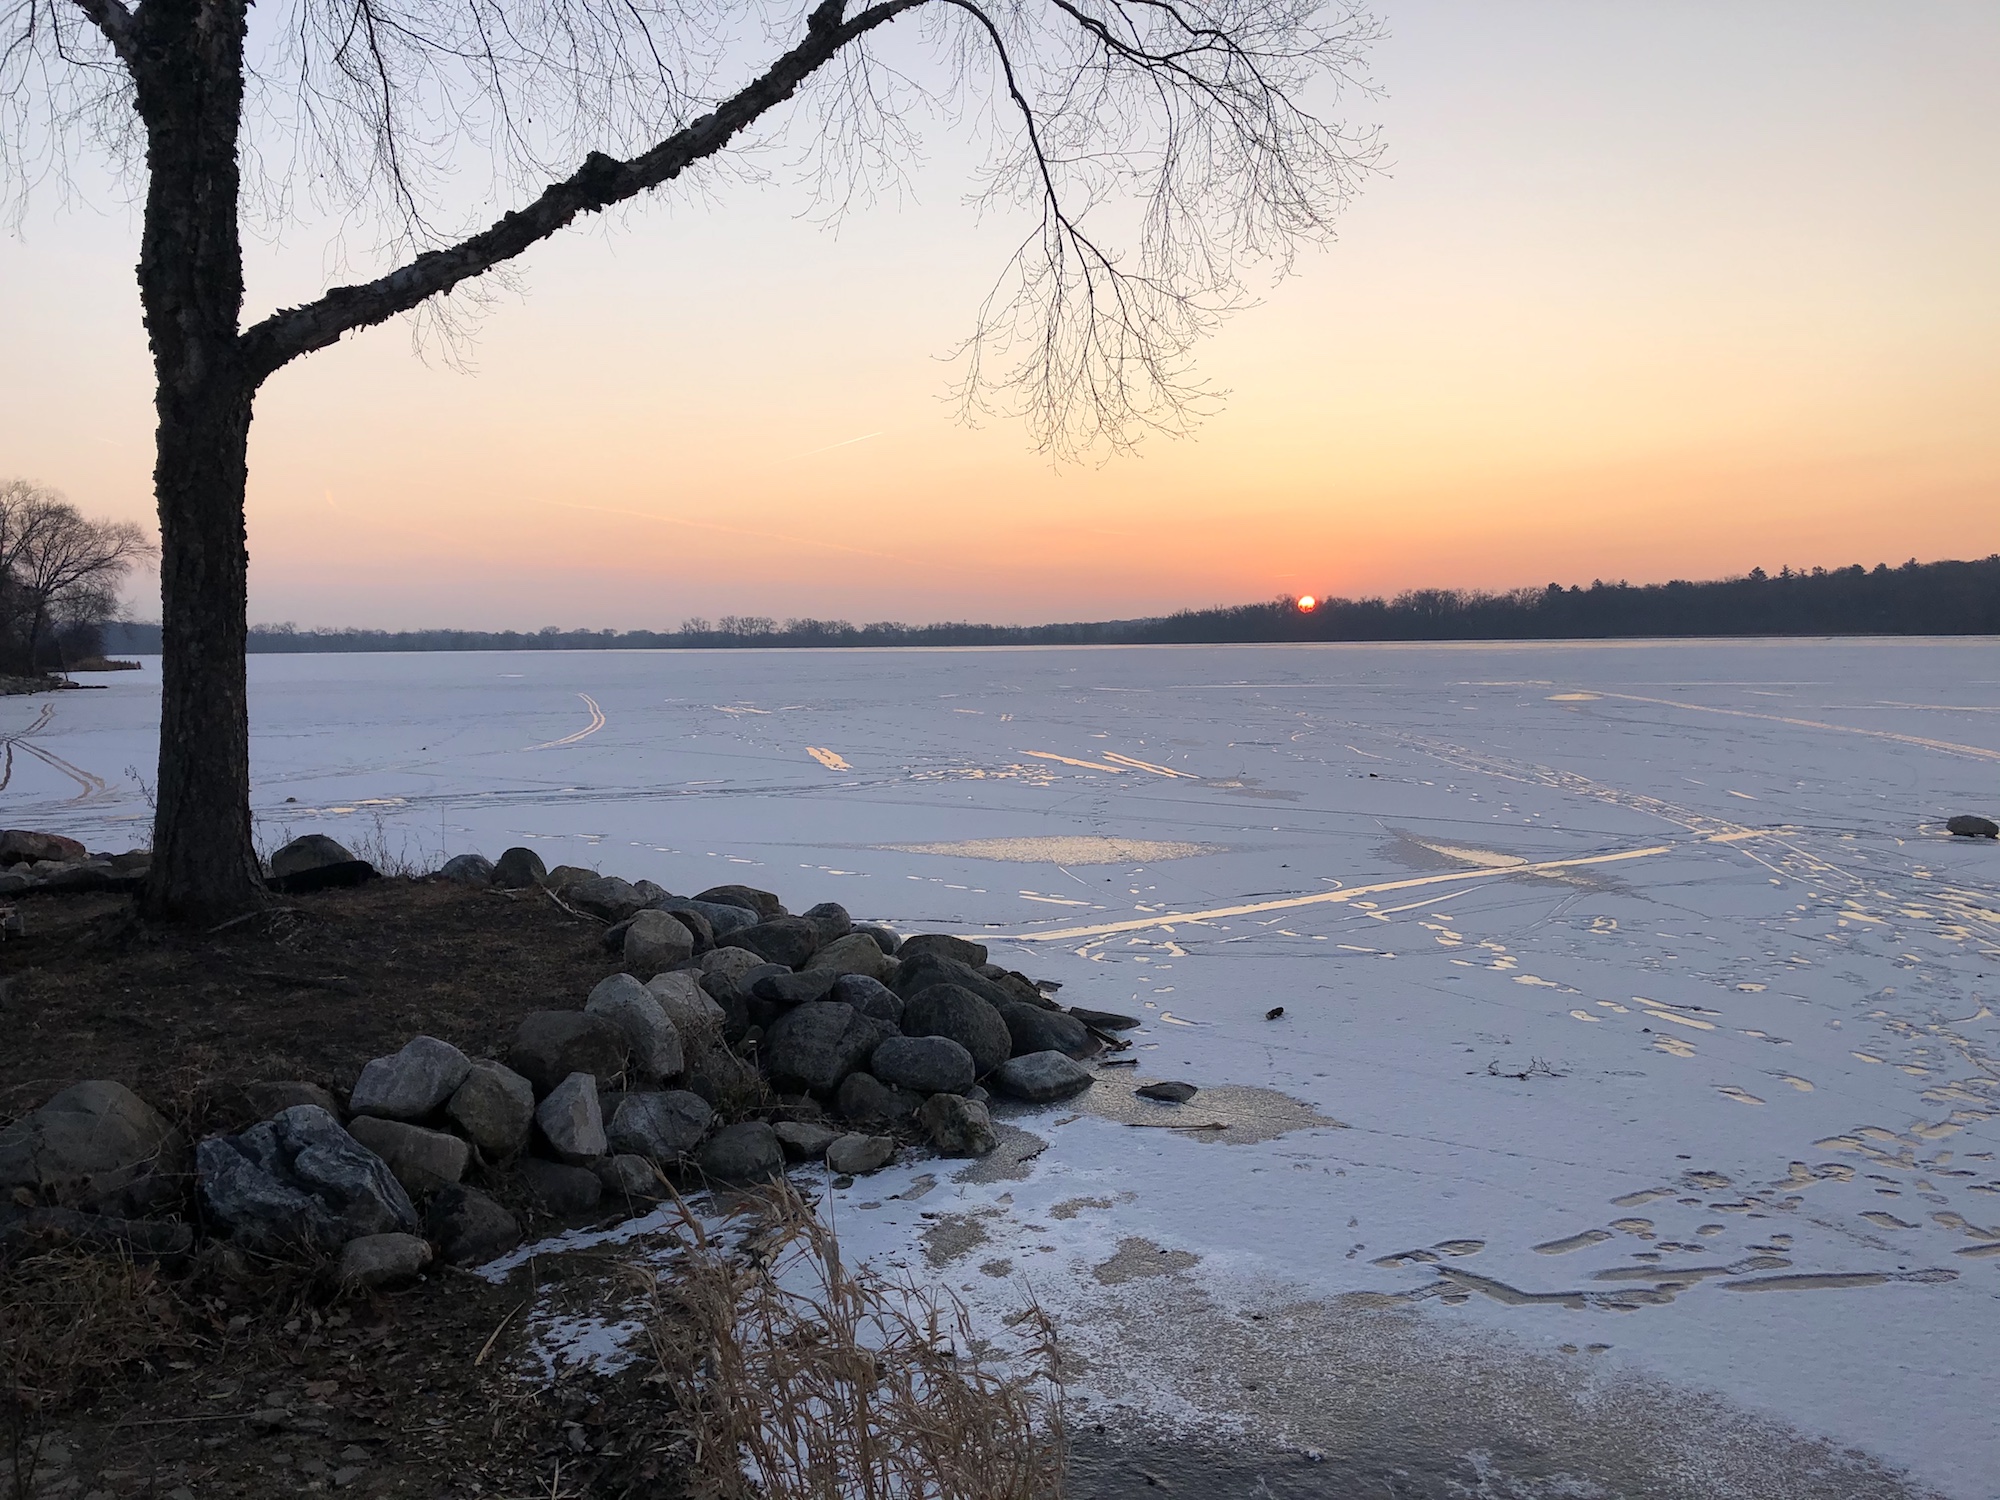 Lake Wingra on December 19, 2019.